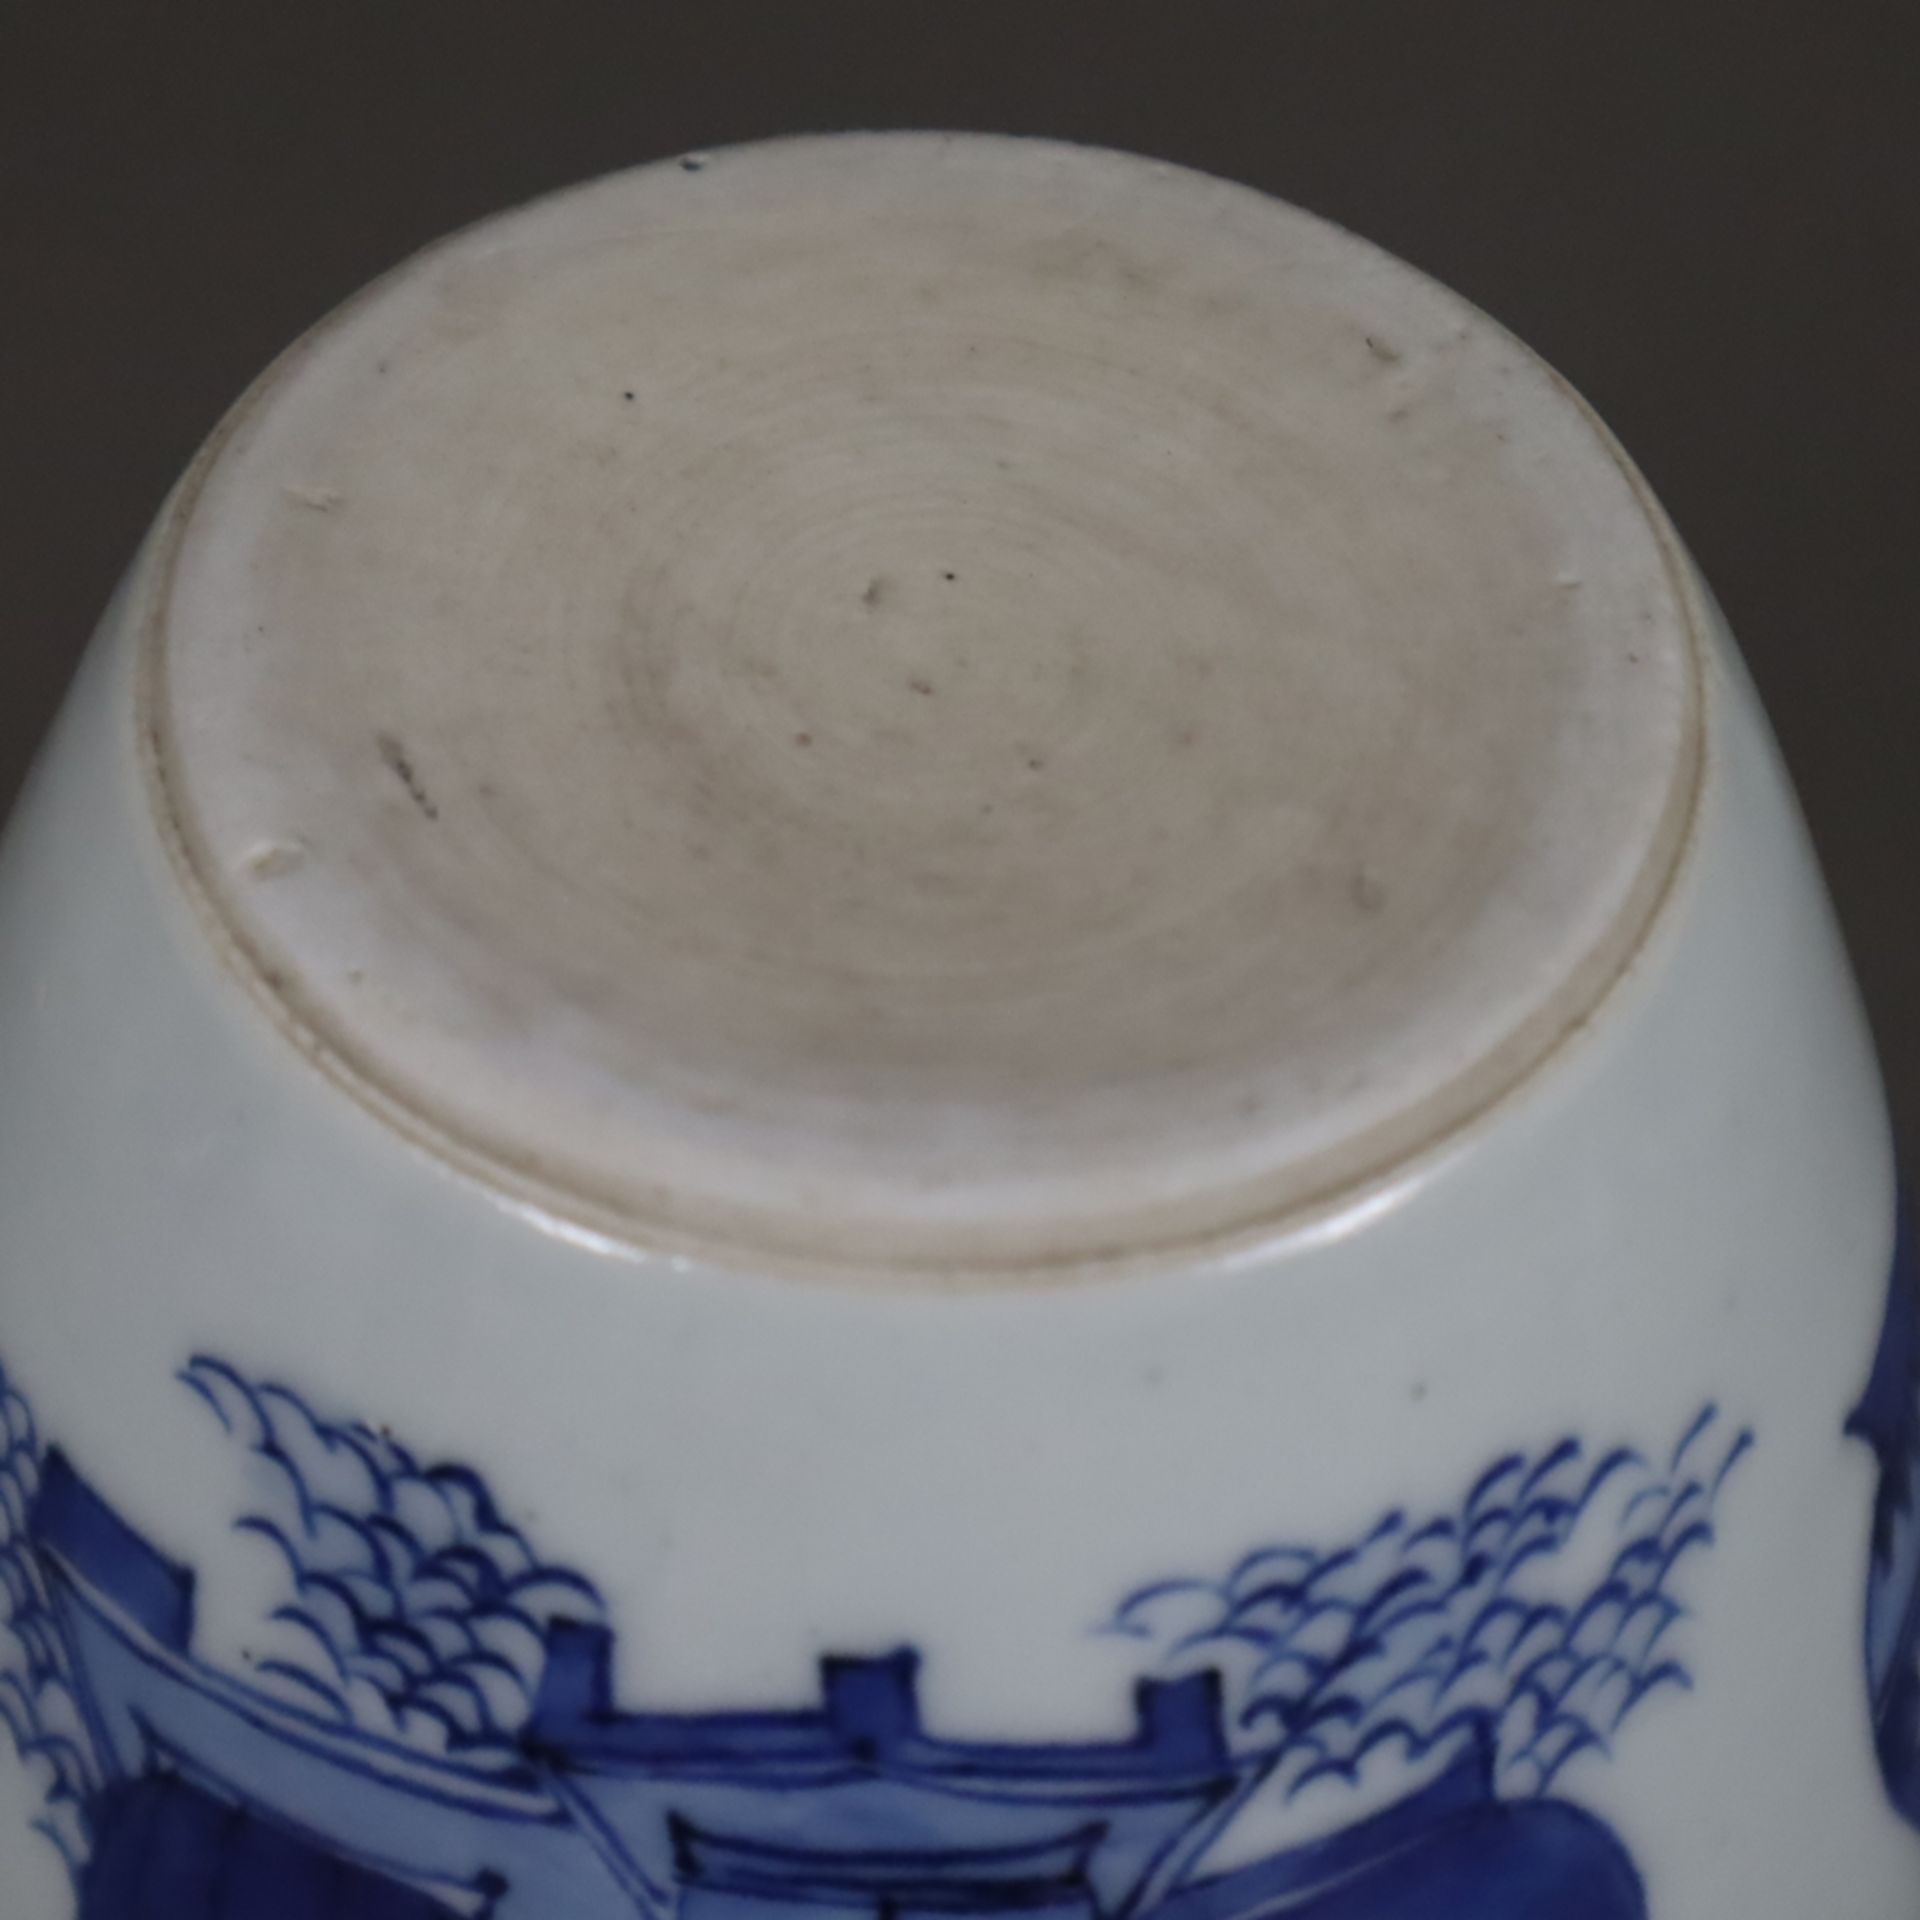 Blau-weiße Vase - China, Qing-Dynastie, Porzellan, ovoide Form, umlaufend in Unterglasurblau bemalt - Image 8 of 8